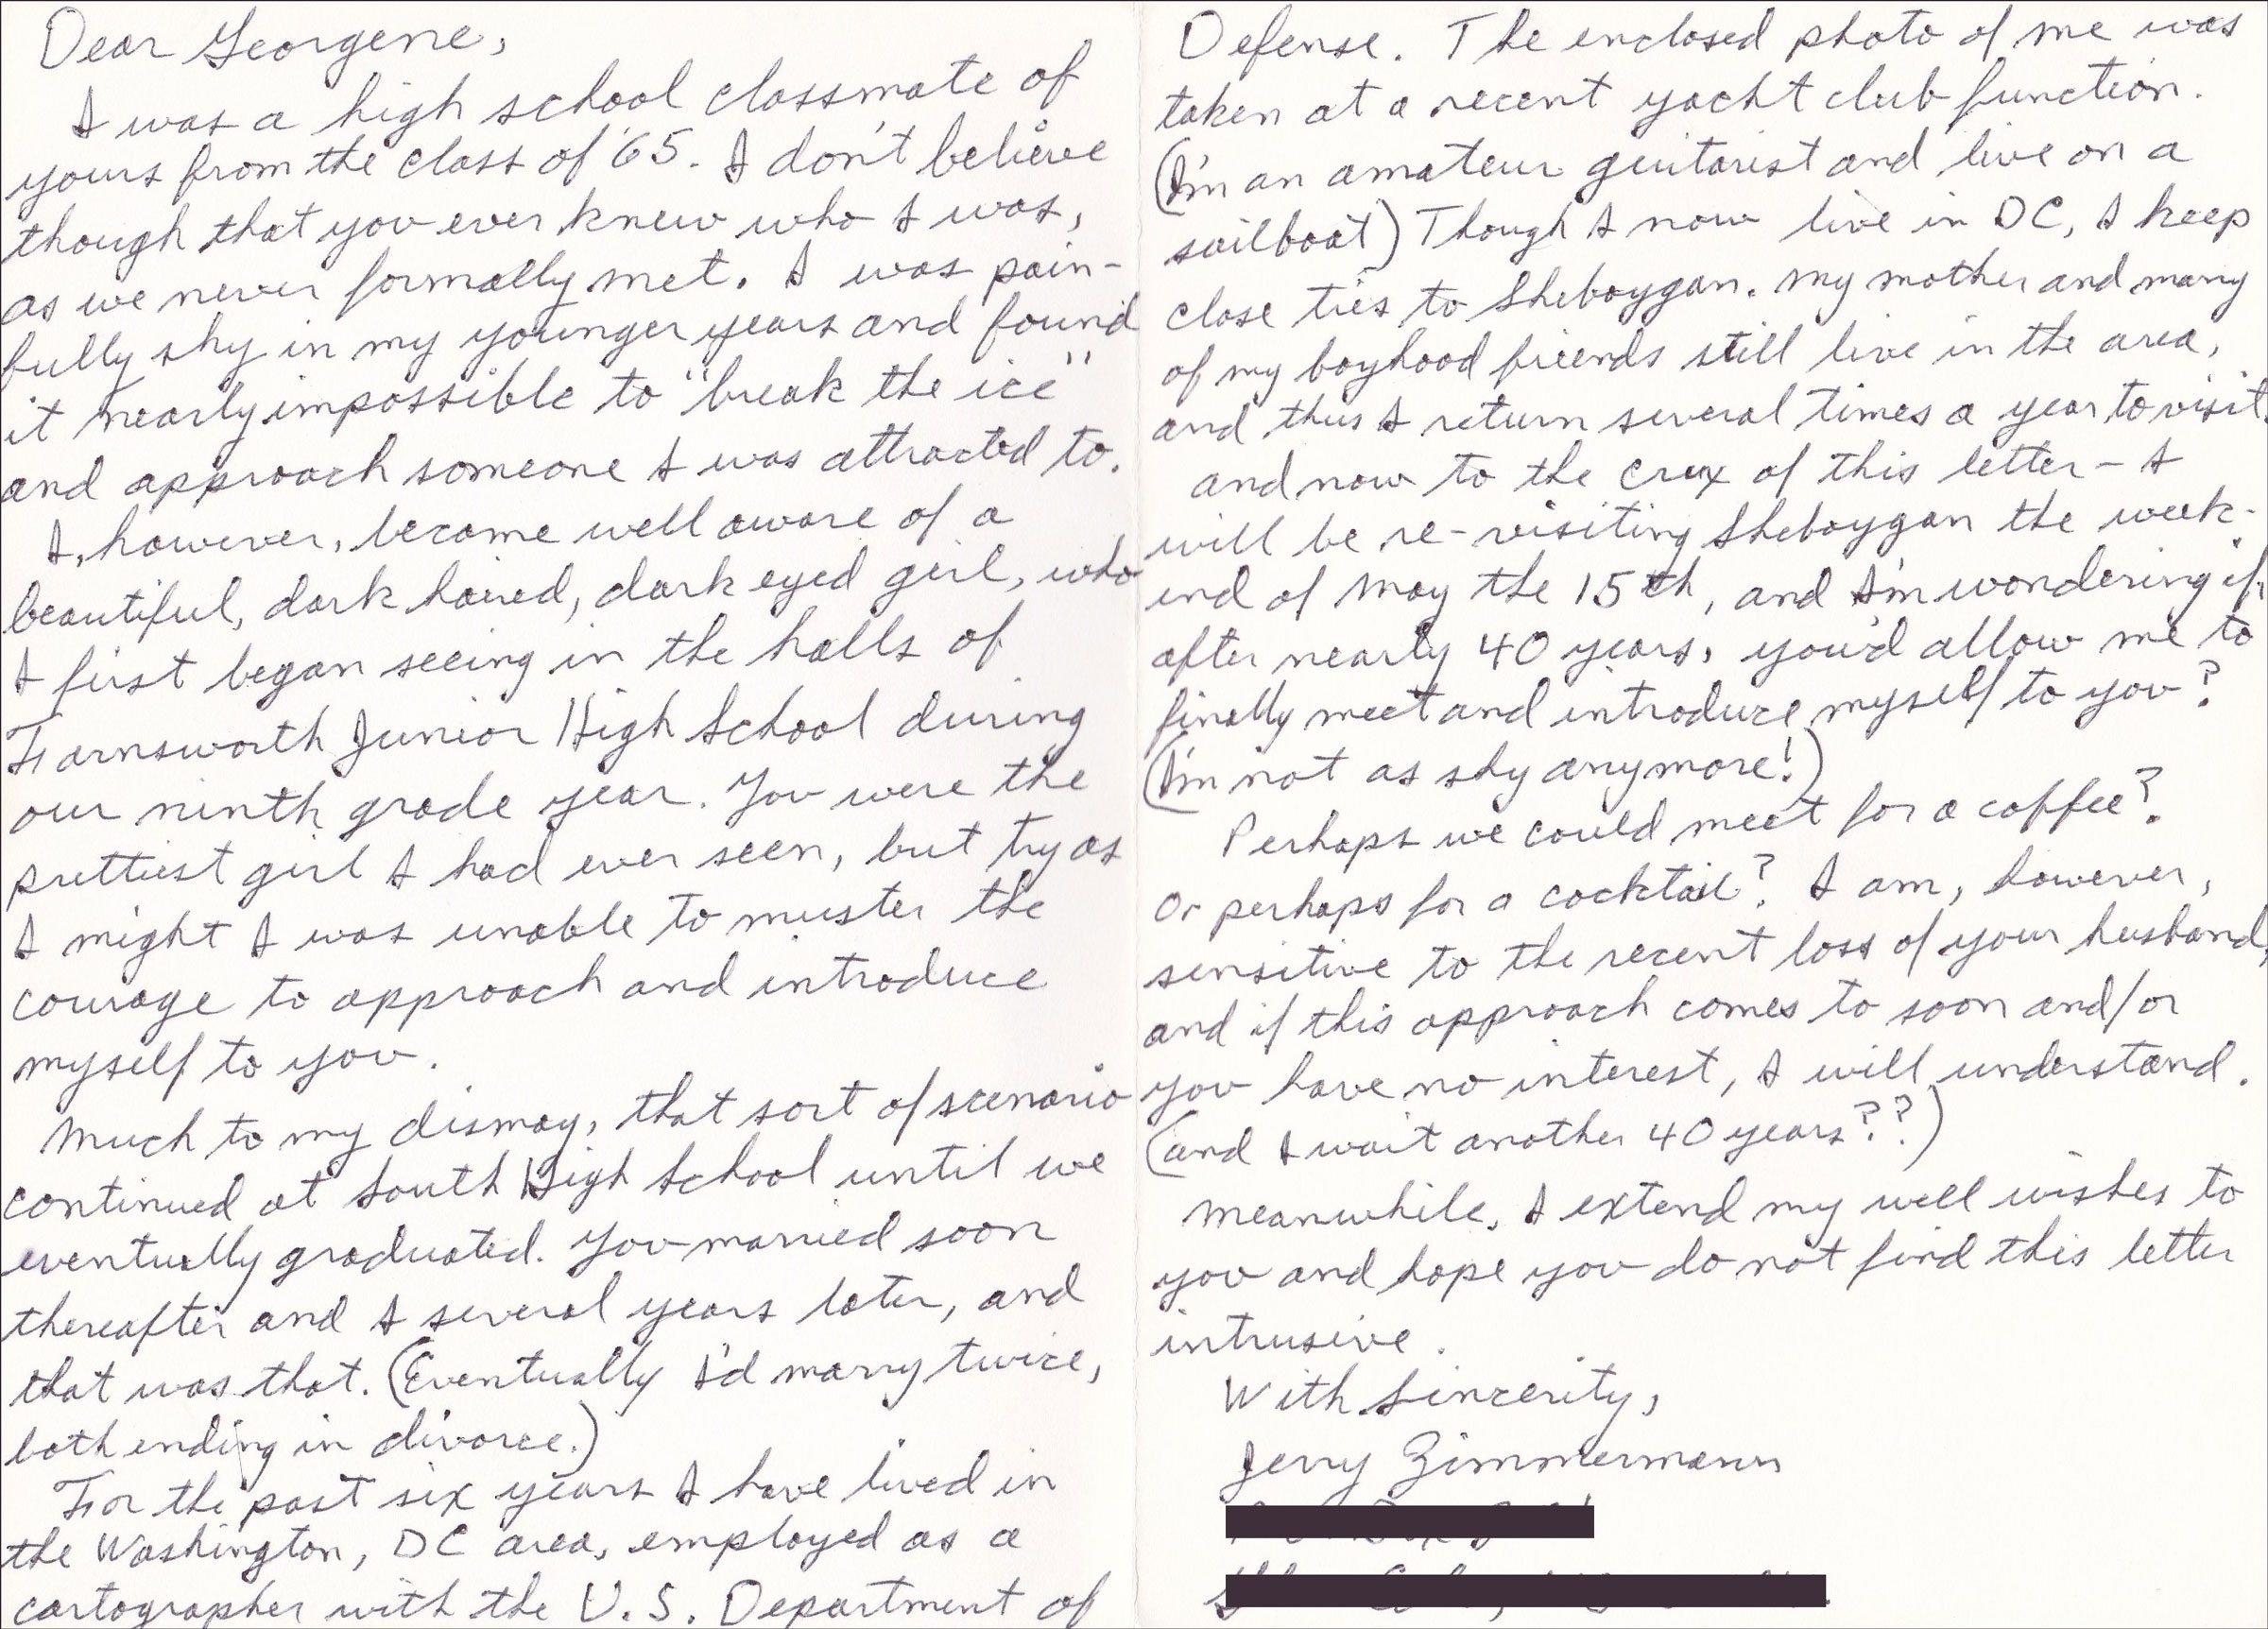 Jerry's handwritten note to Georgene